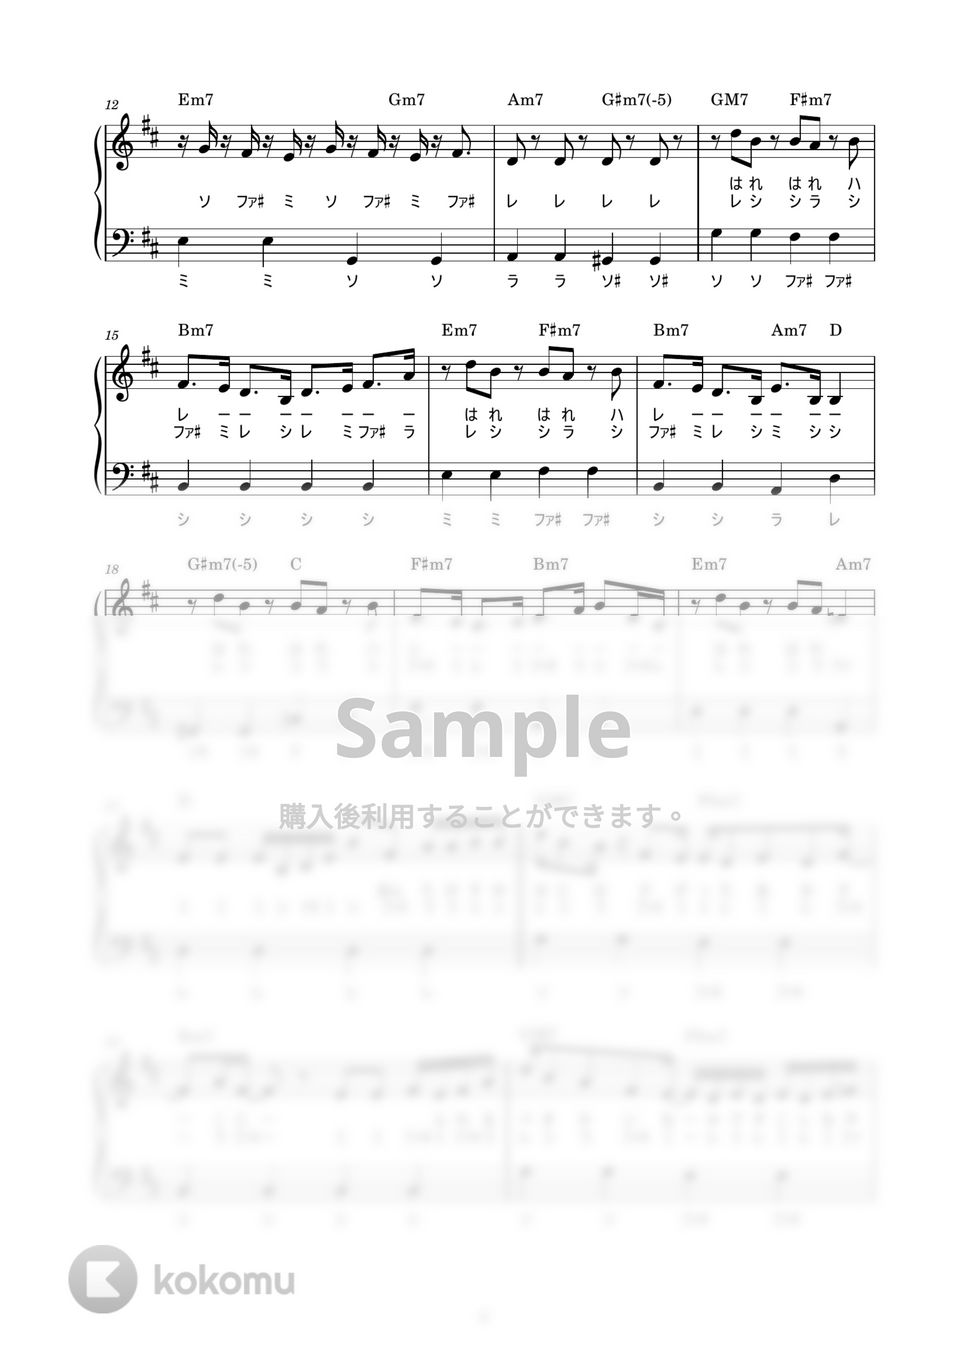 藤井 風 - 何なんw (かんたん / 歌詞付き / ドレミ付き / 初心者) by piano.tokyo